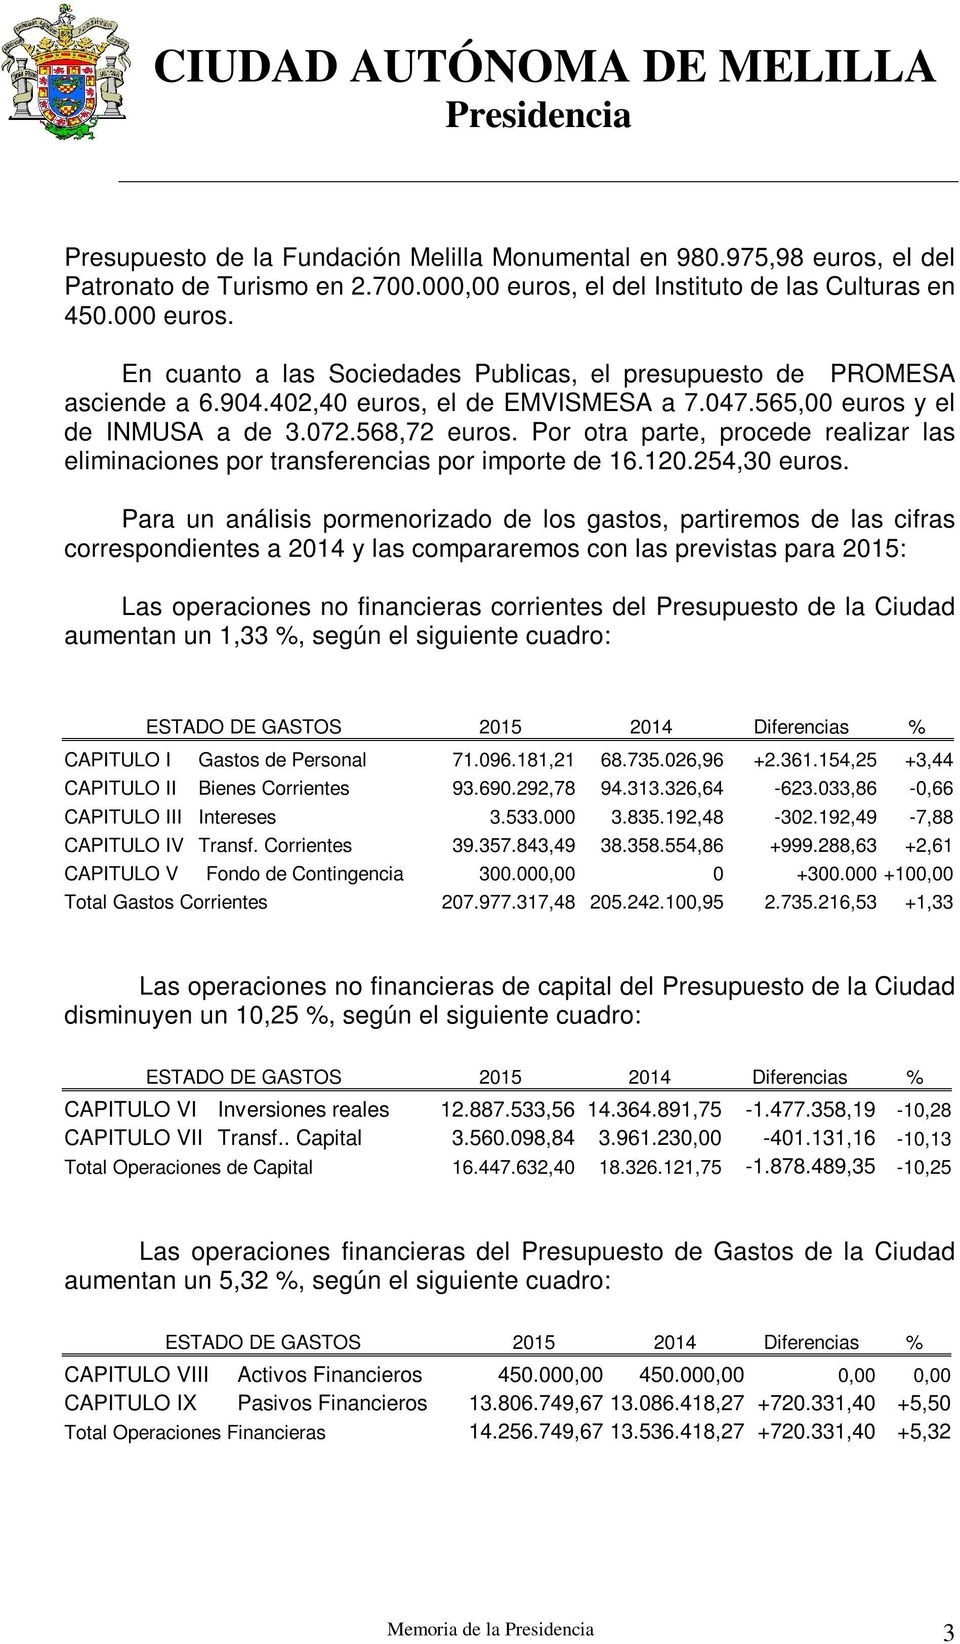 Por otra parte, procede realizar las eliminaciones por transferencias por importe de 16.120.254,30 euros.